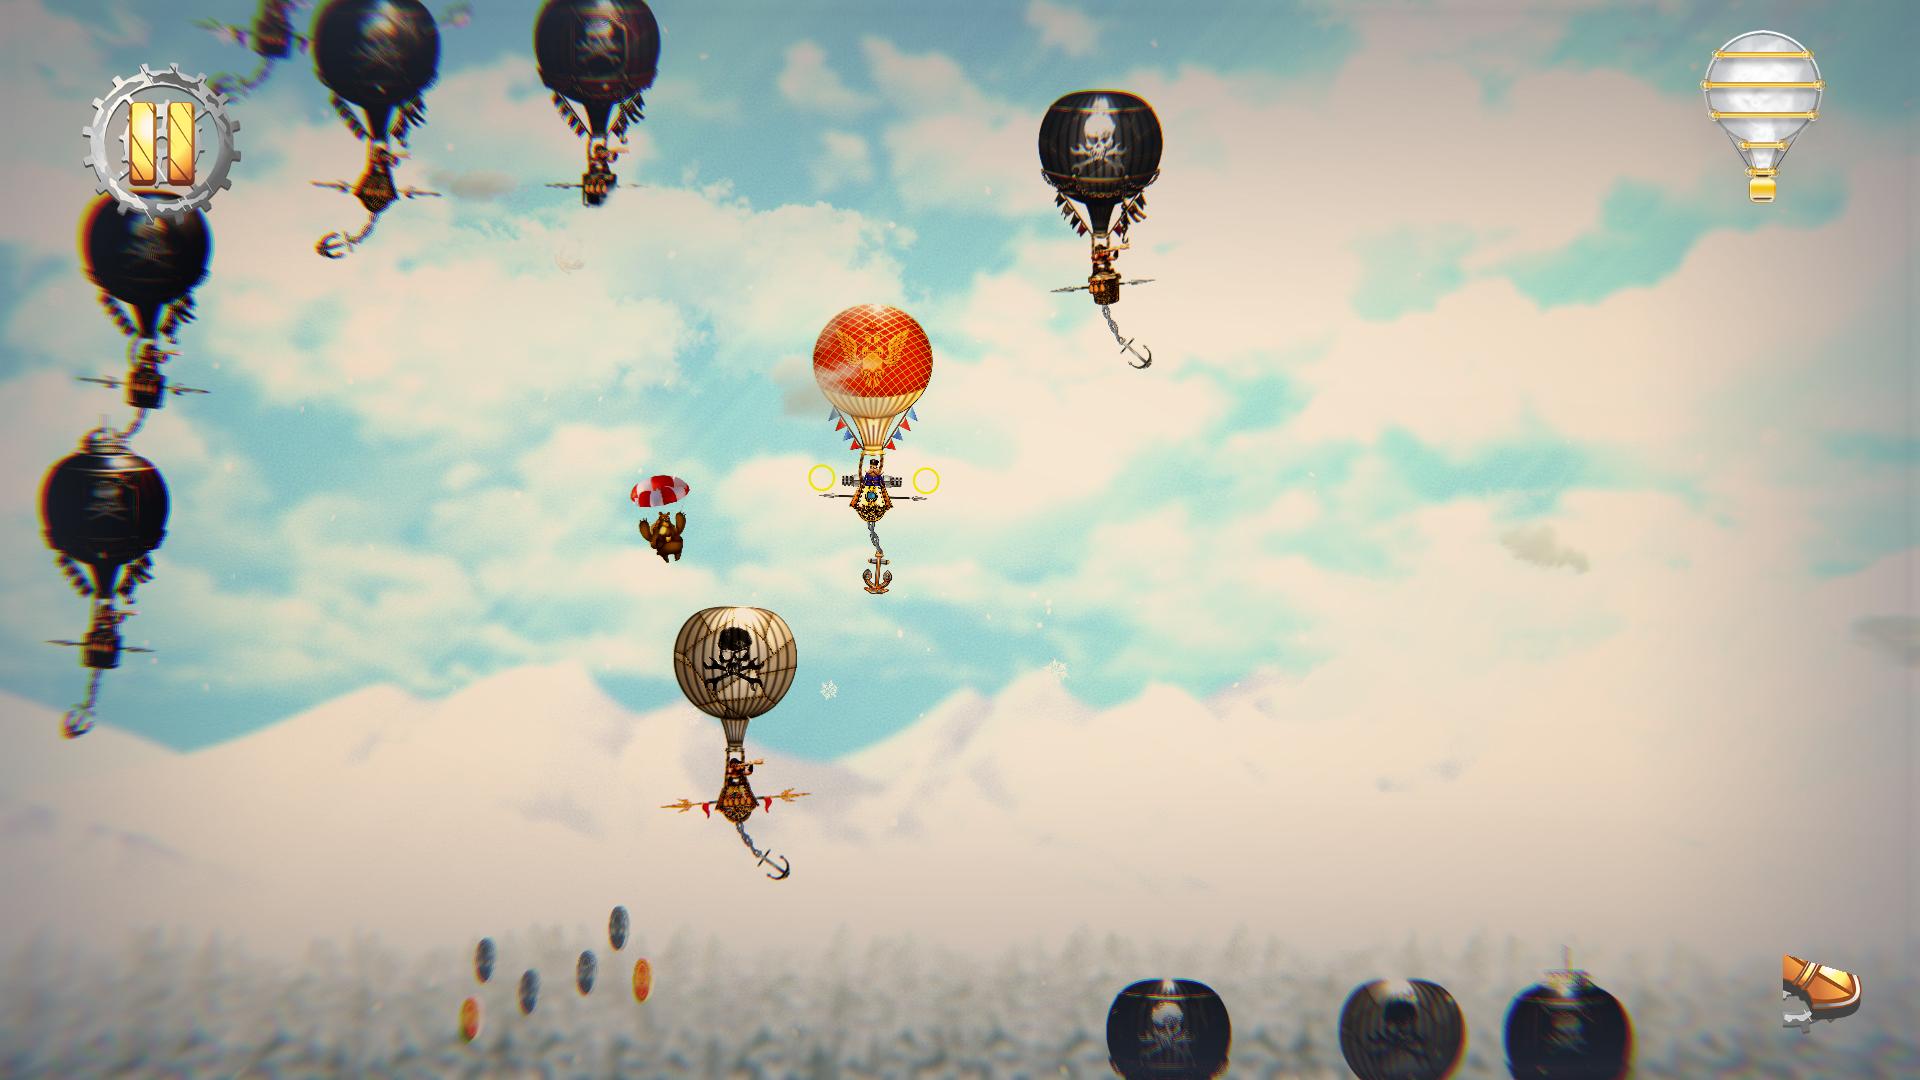 Screenshot №4 from game Pilam Sky